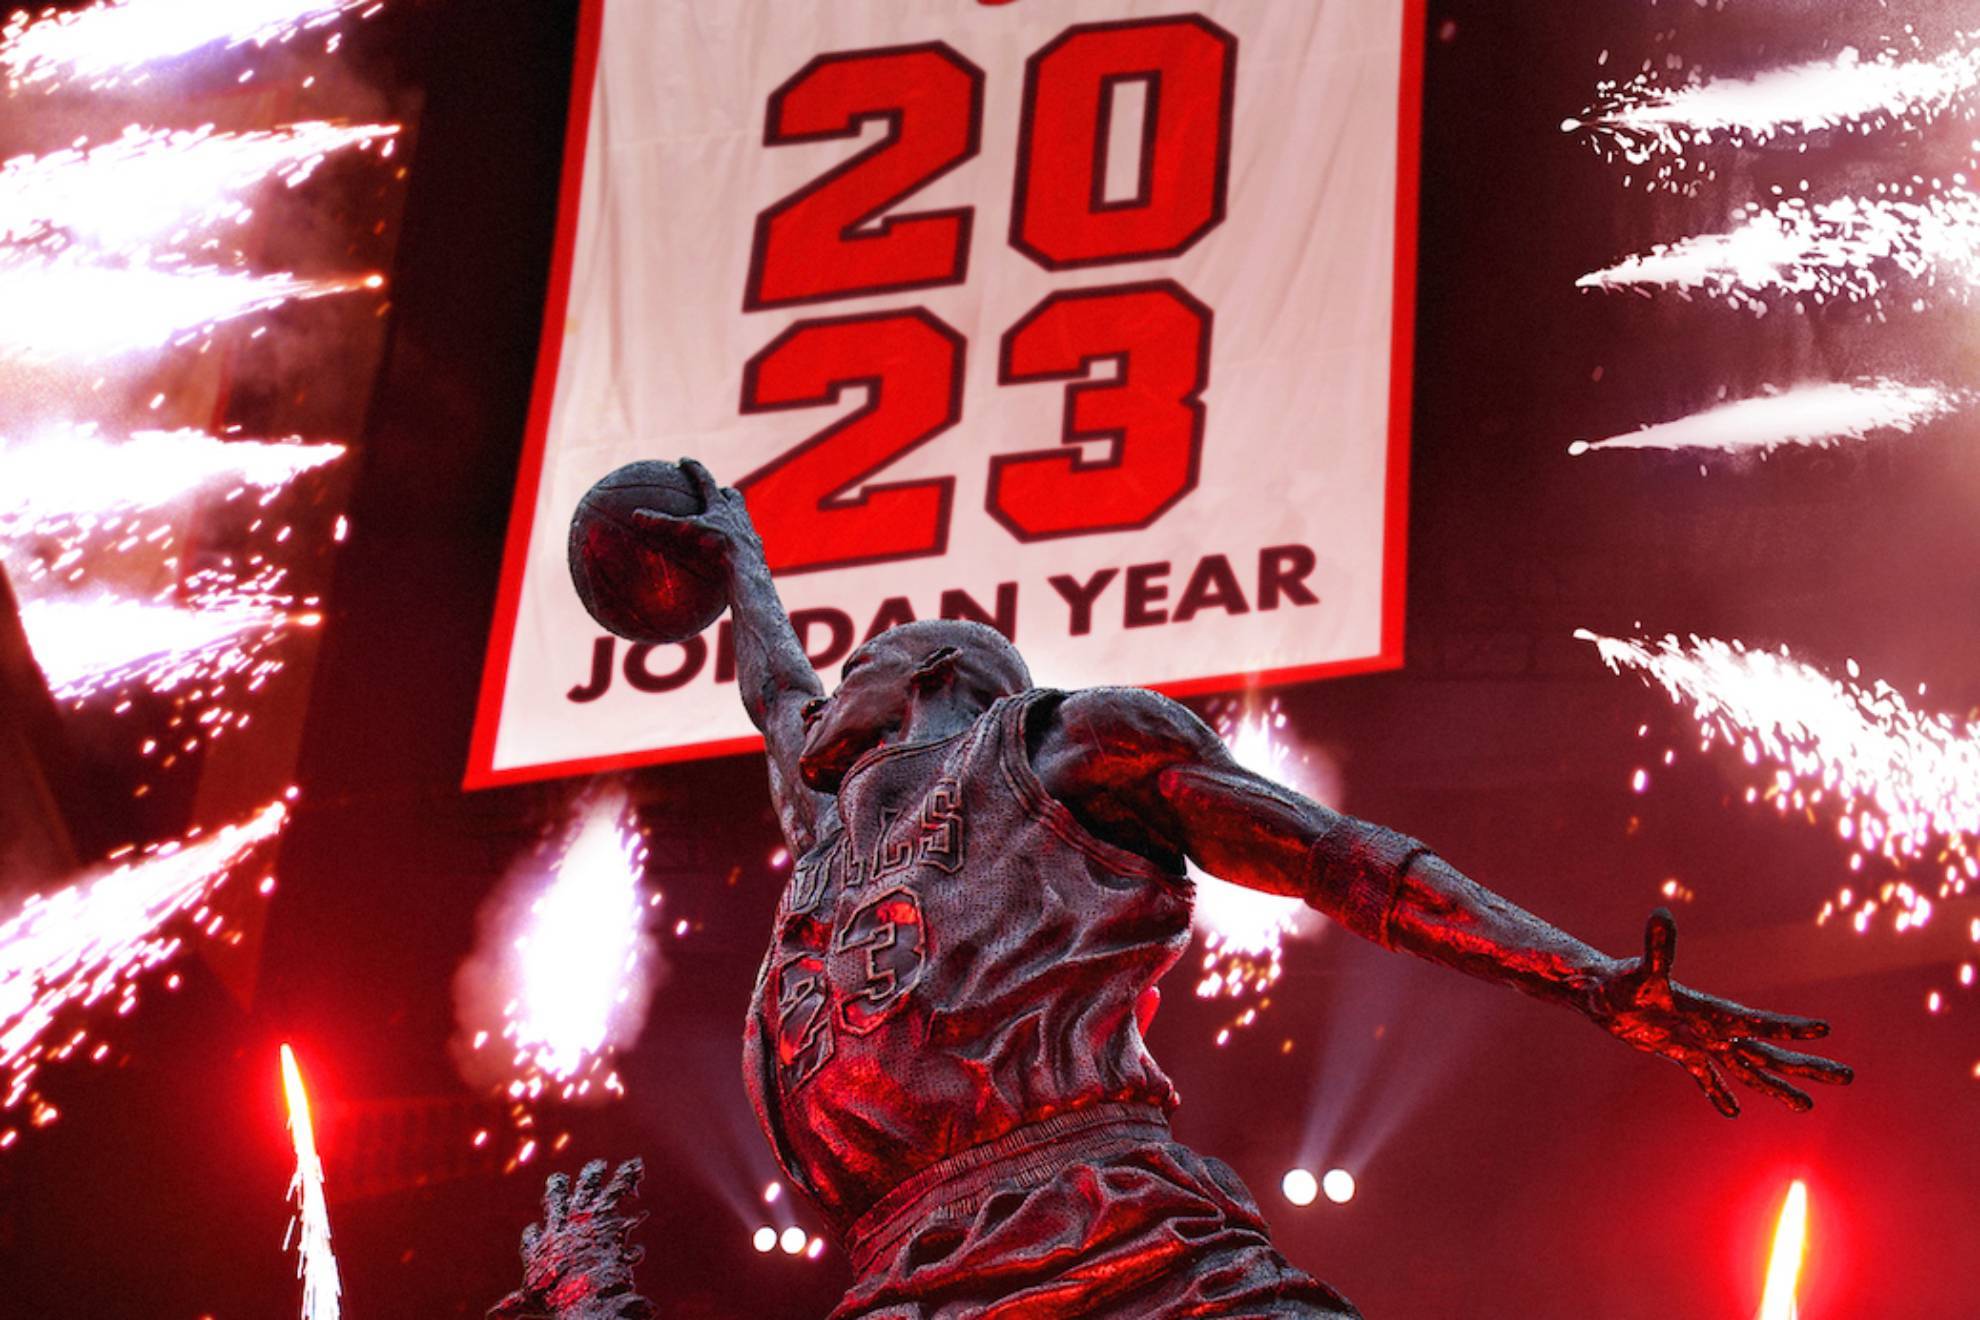 2023 ya ha sido bautizado por muchos usuarios de las redes sociales como El Año de Jordan. ¿Por qué? Por el número de Michael Jordan.